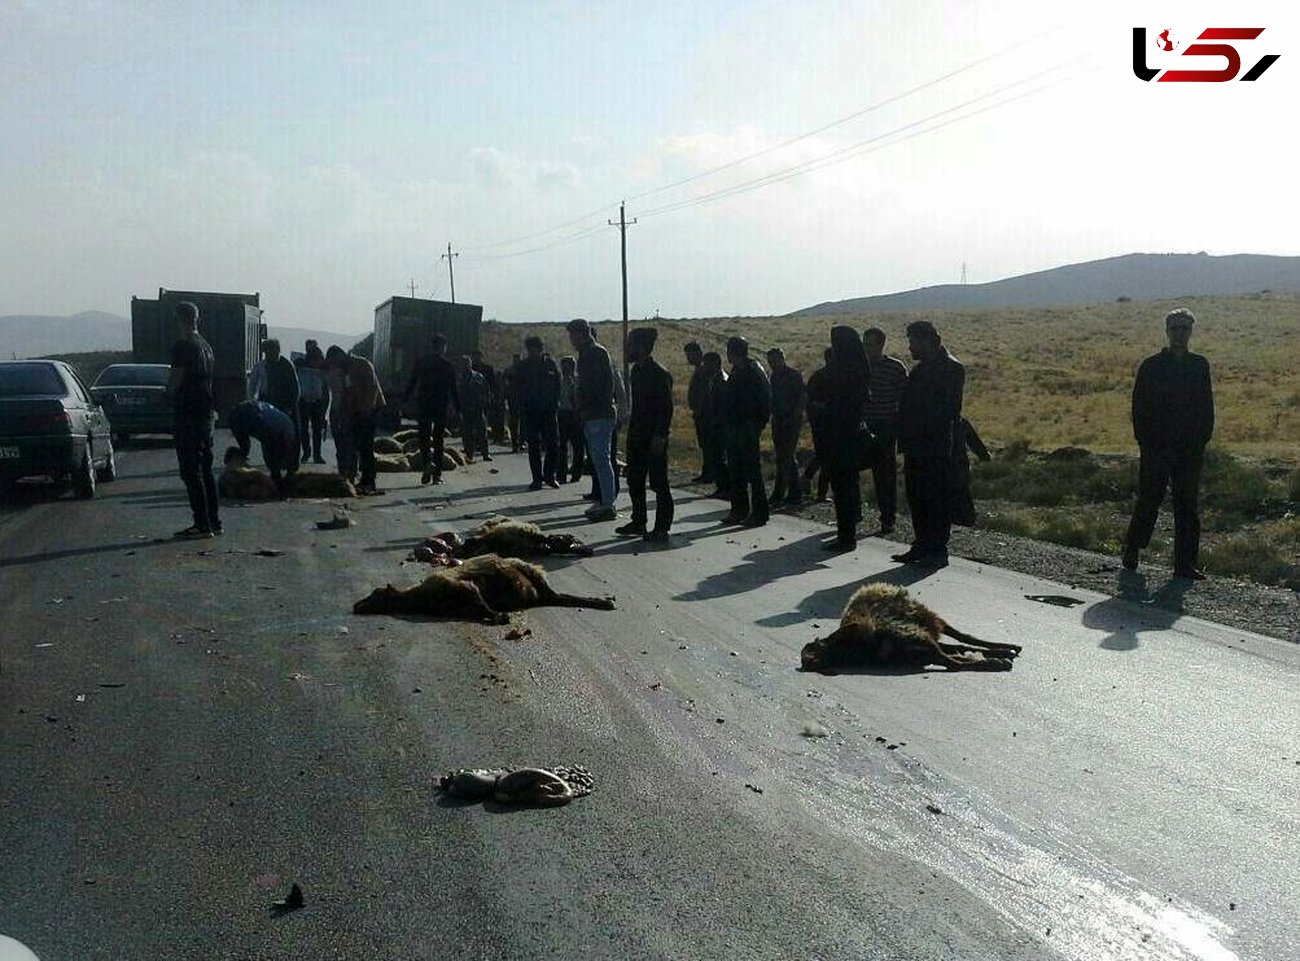 کشته شدن 40 گوسفند در دزفول / واژگونی کامیون 3 بامداد رخ داد + عکس